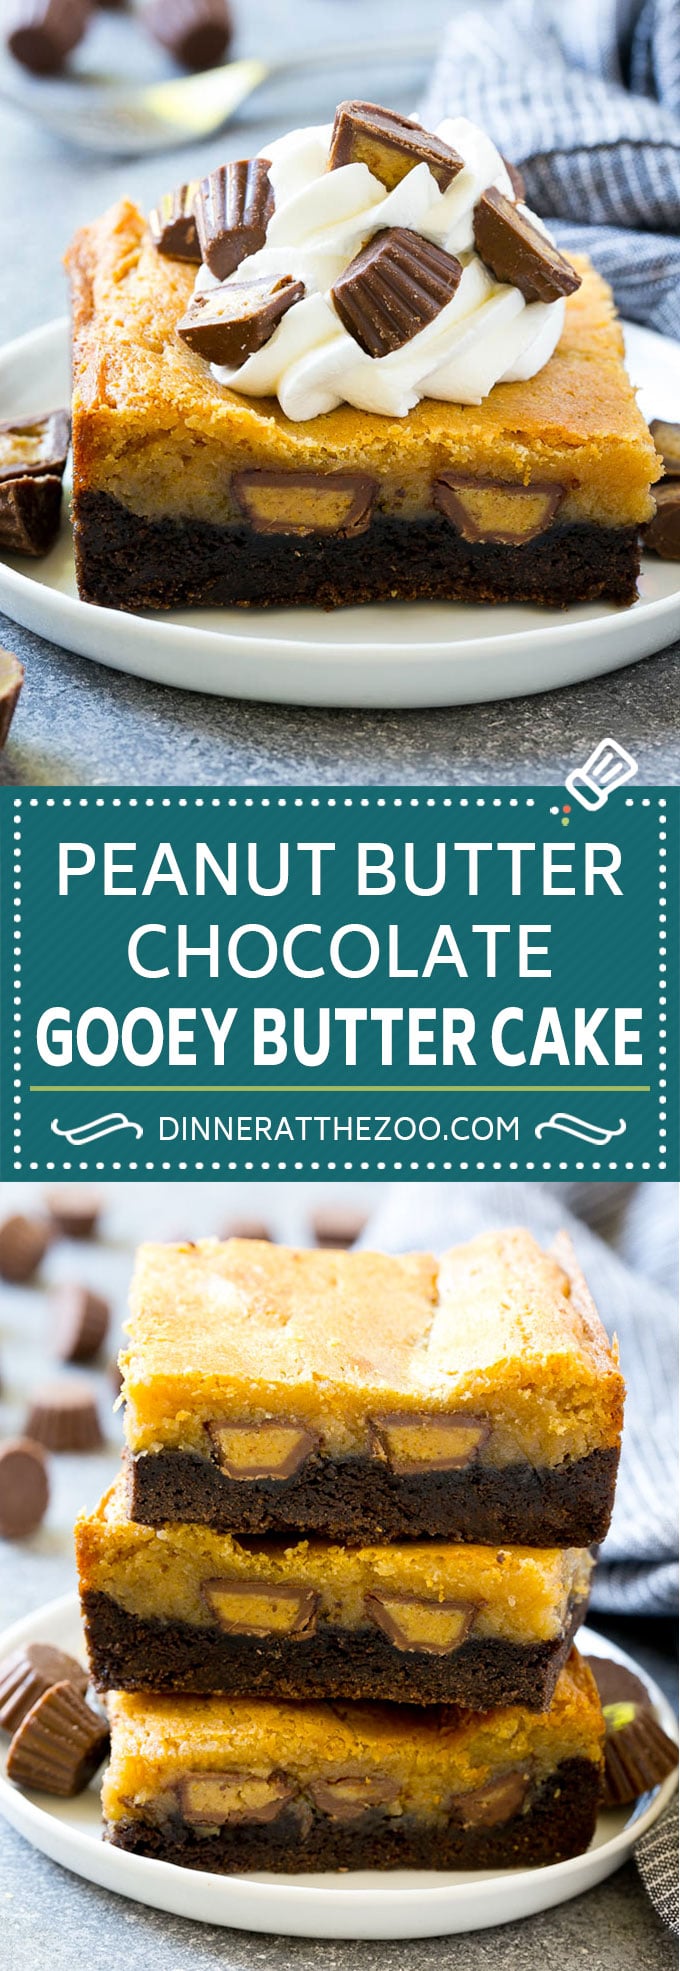 Peanut Butter Chocolate Gooey Butter Cake Recipe | Gooey Butter Cake | Peanut Butter Cake | Chocolate Peanut Butter Cake #cake #butter #peanutbutter #chocolate #dessert #dinneratthezoo